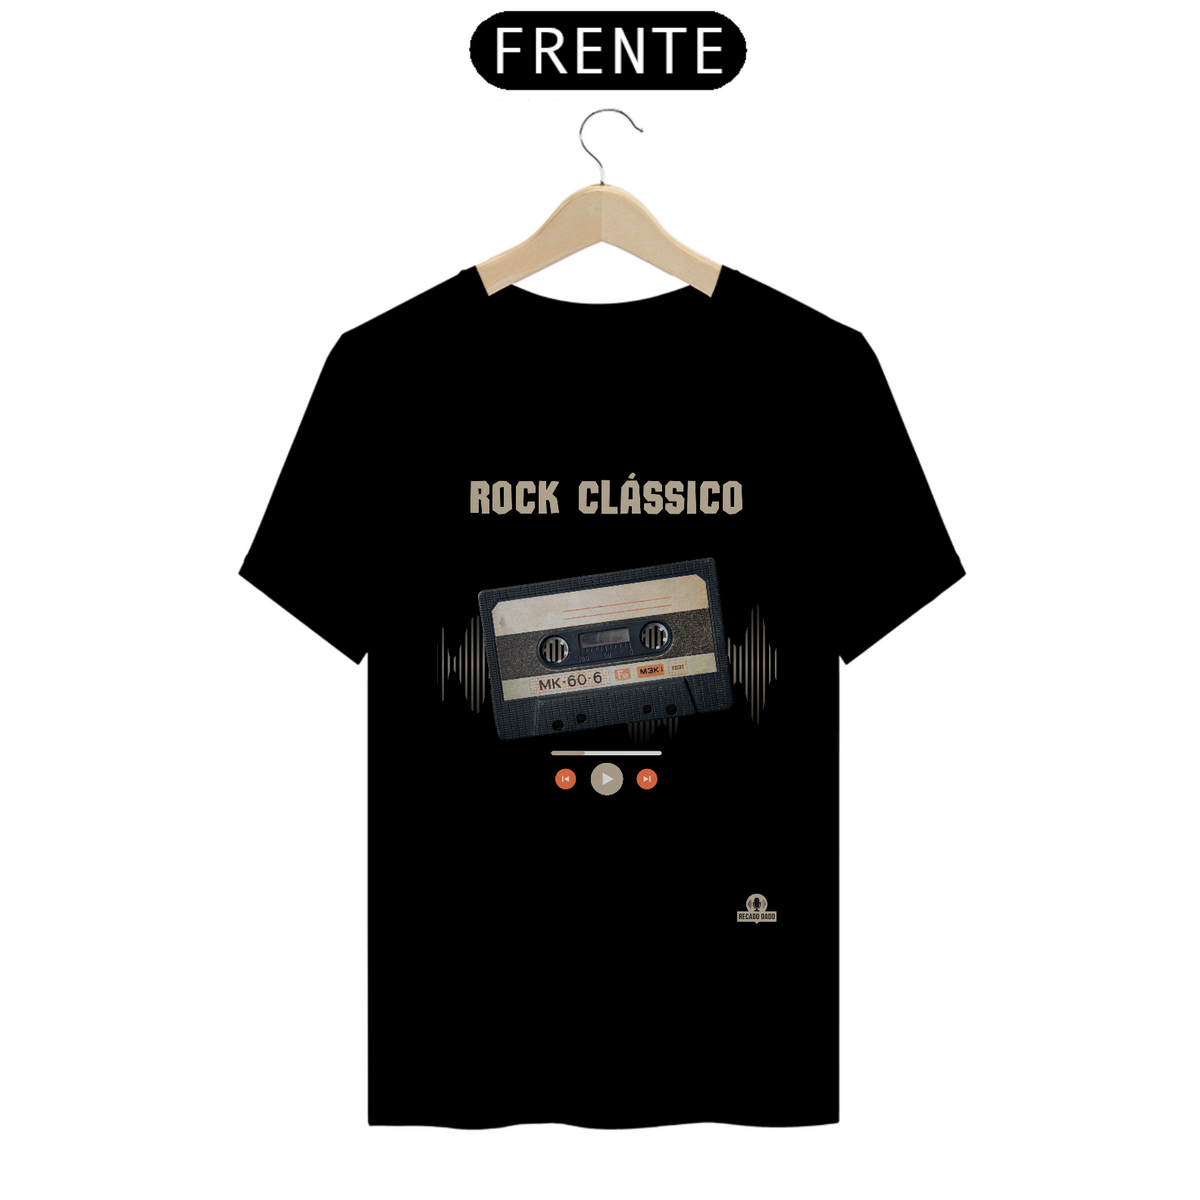 Nome do produto: Camiseta Retrô Rock Clássico com estampa de fita k7.